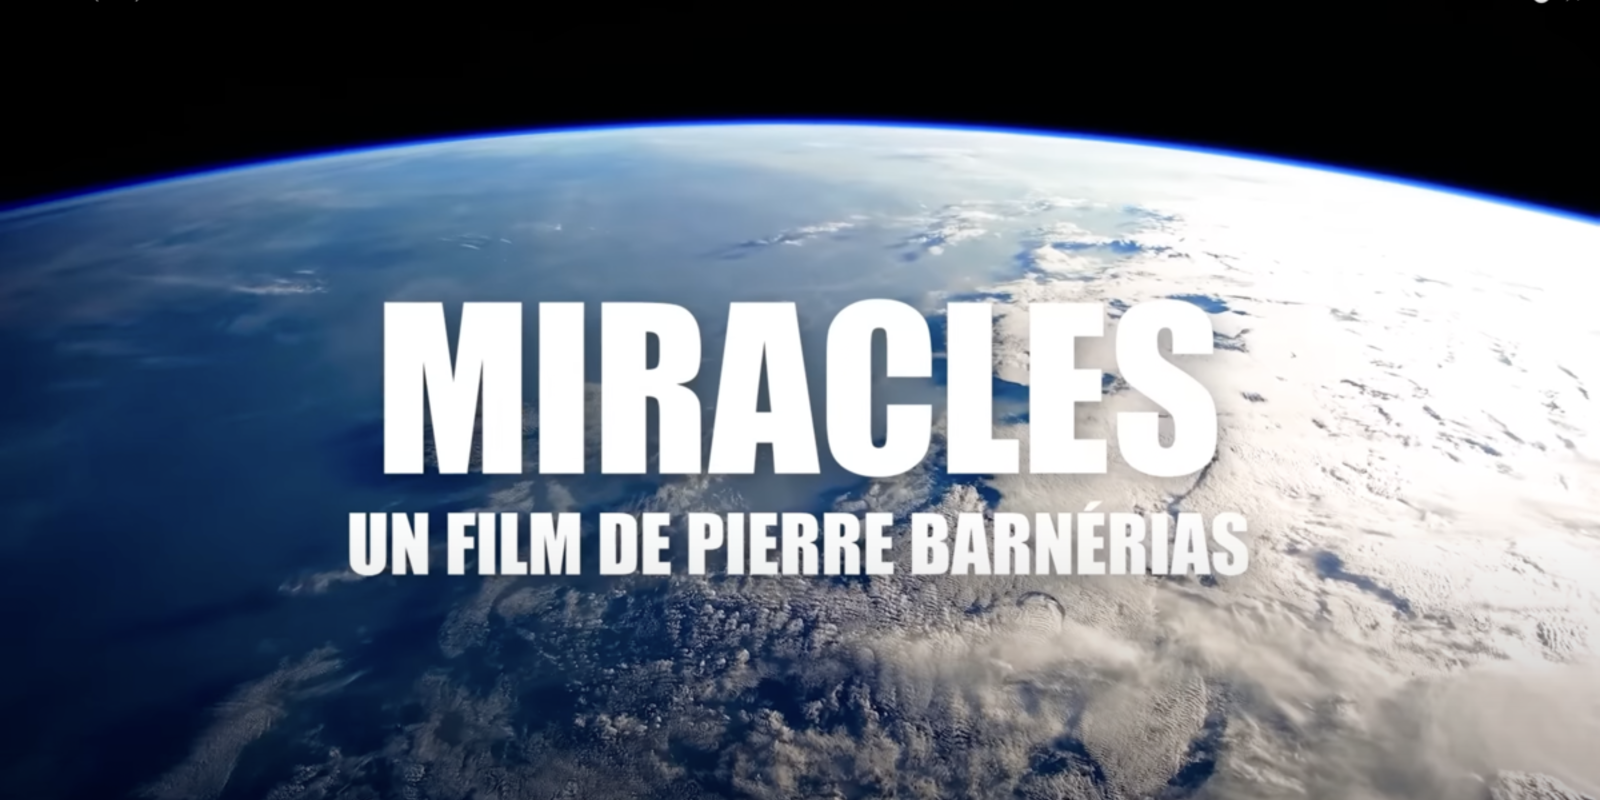 Découvrez le film Miracles au cinéma !